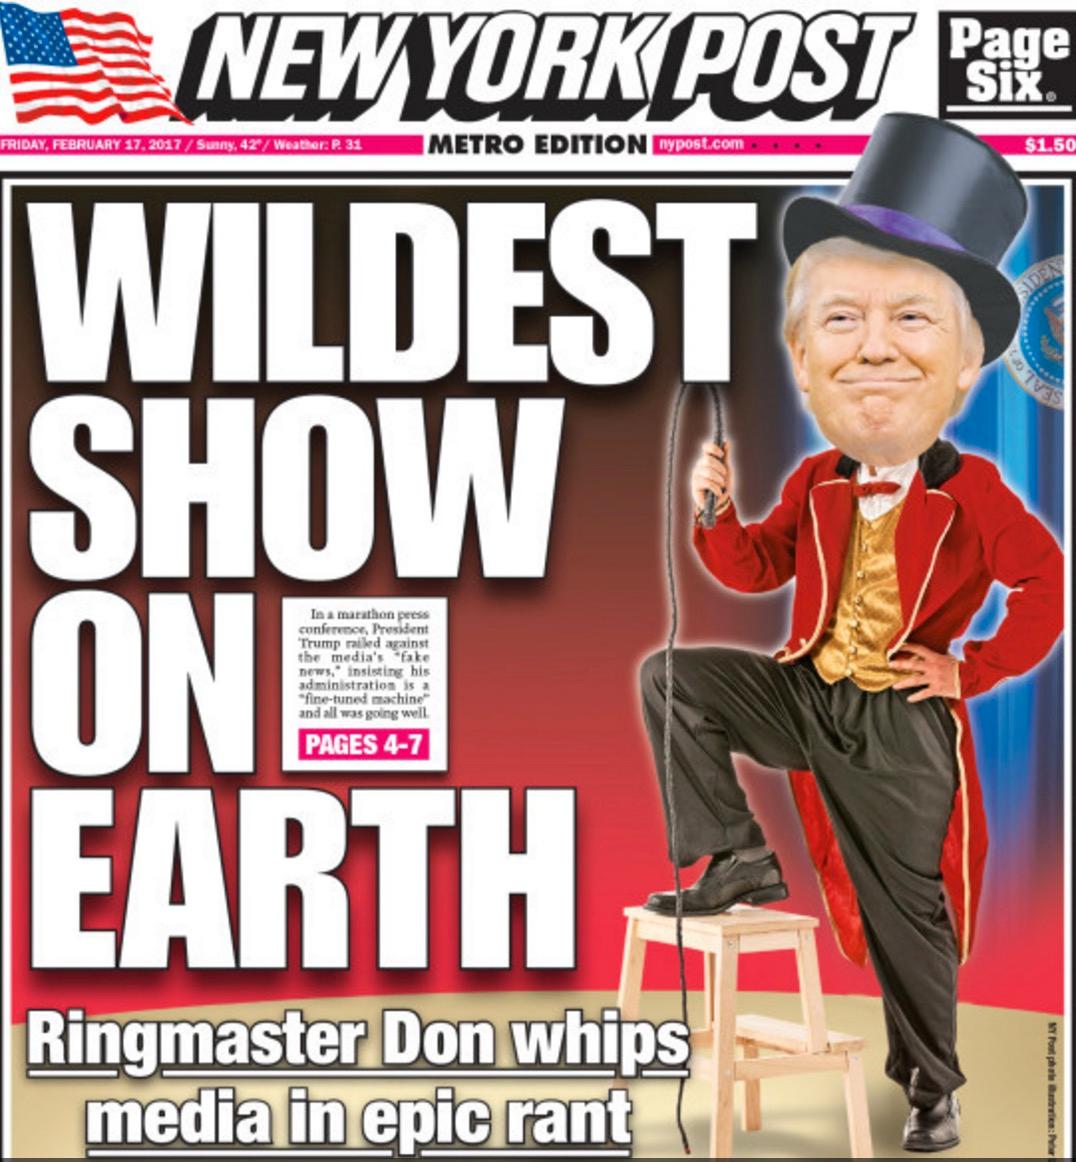 Trump-vänliga New York Post, som liksom Fox News ägs av mediemogulen Rupert Murdoch, uppskattade också cirkus Trump.